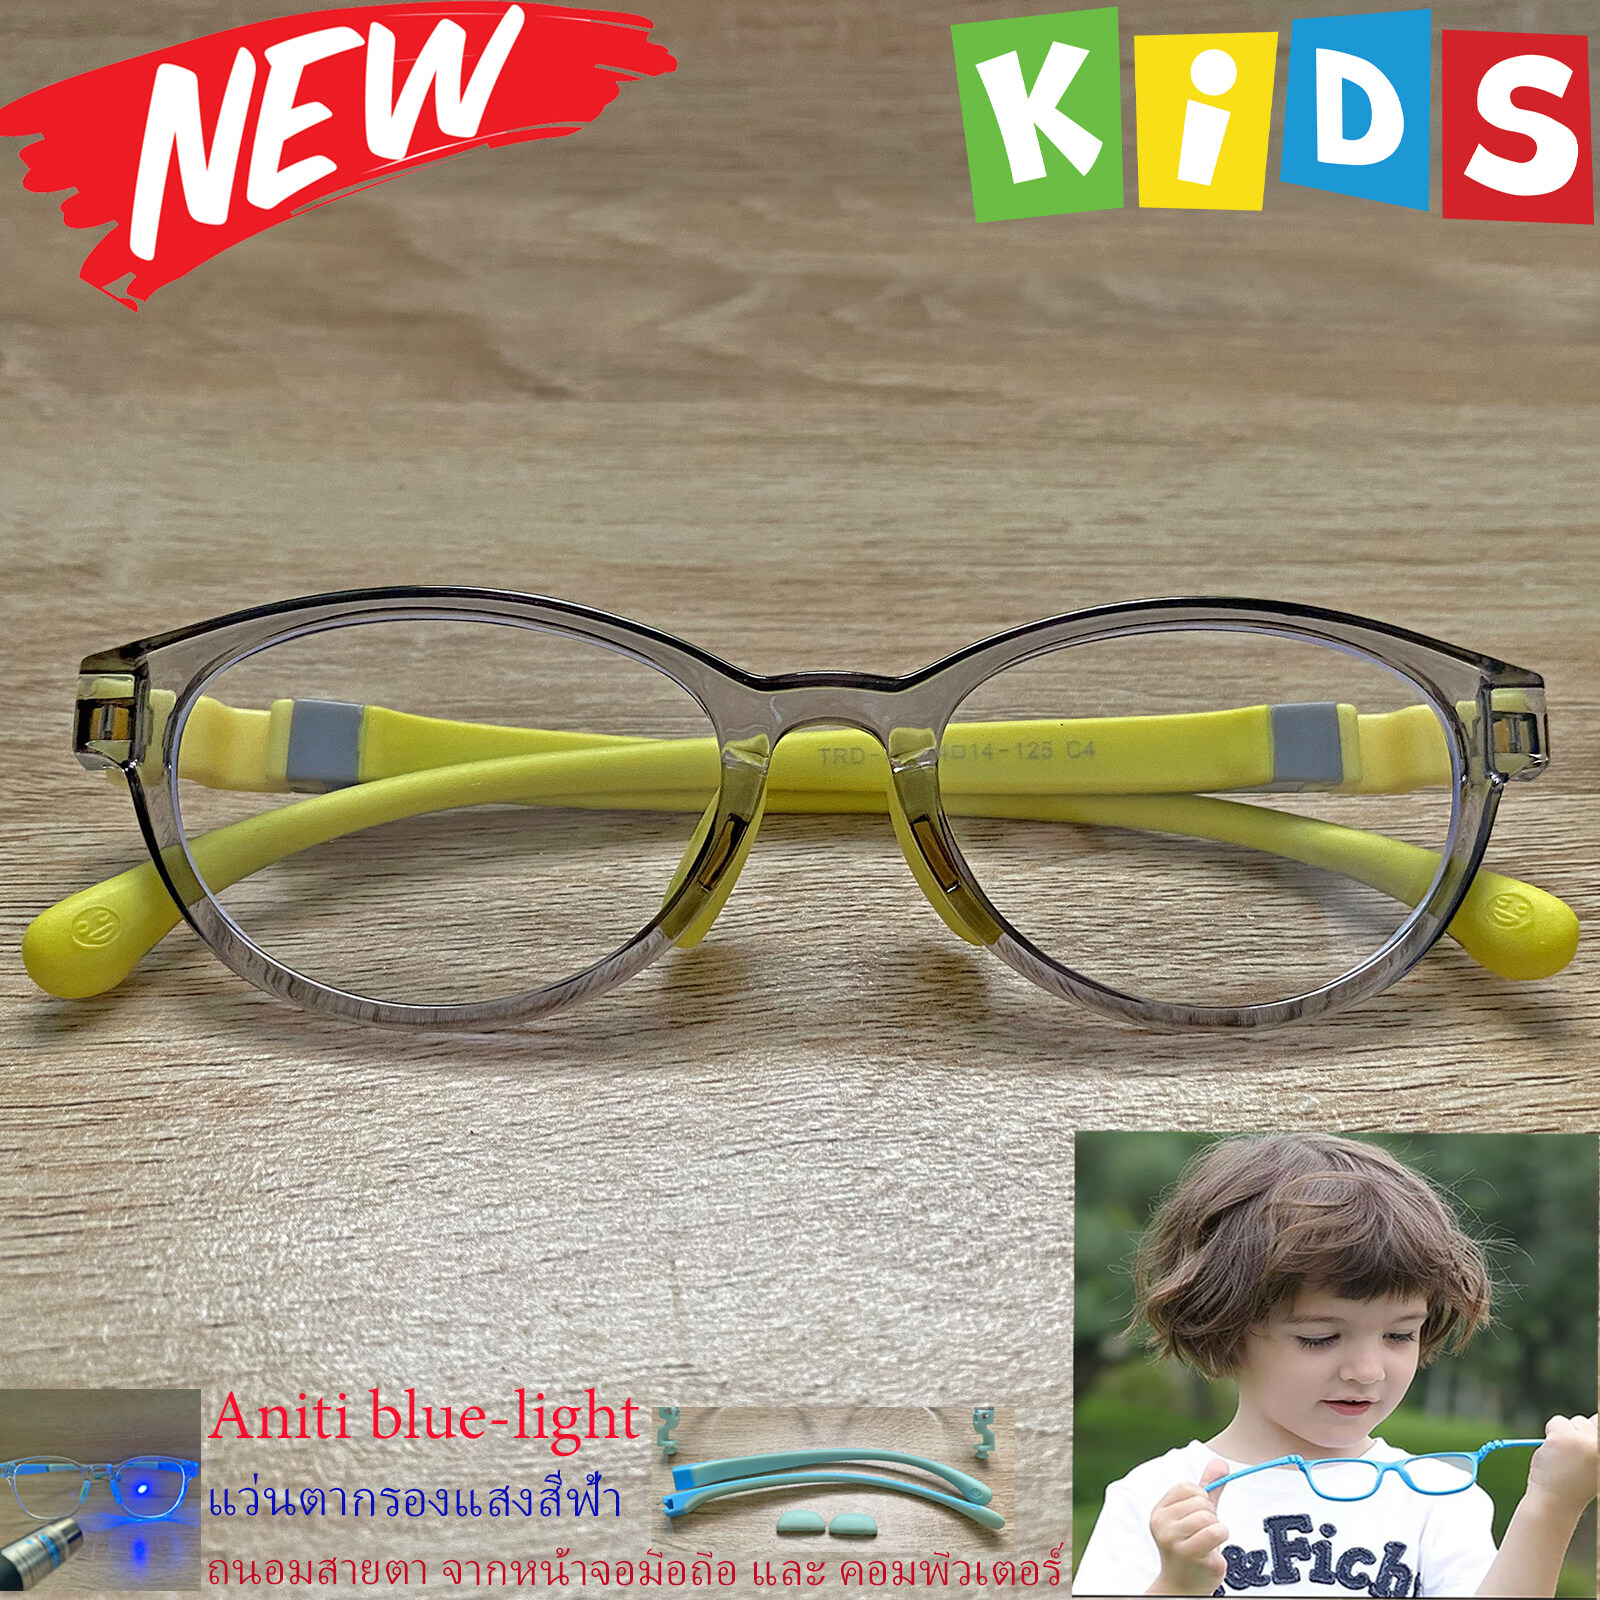 กรอบแว่นตาเด็ก กรองแสง สีฟ้า blue block แว่นเด็ก บลูบล็อค รุ่น 05 สีเทา ขาข้อต่อยืดหยุ่น ถอดขาเปลี่ยนได้ วัสดุTR90 เหมาะสำหรับเลนส์สายตา